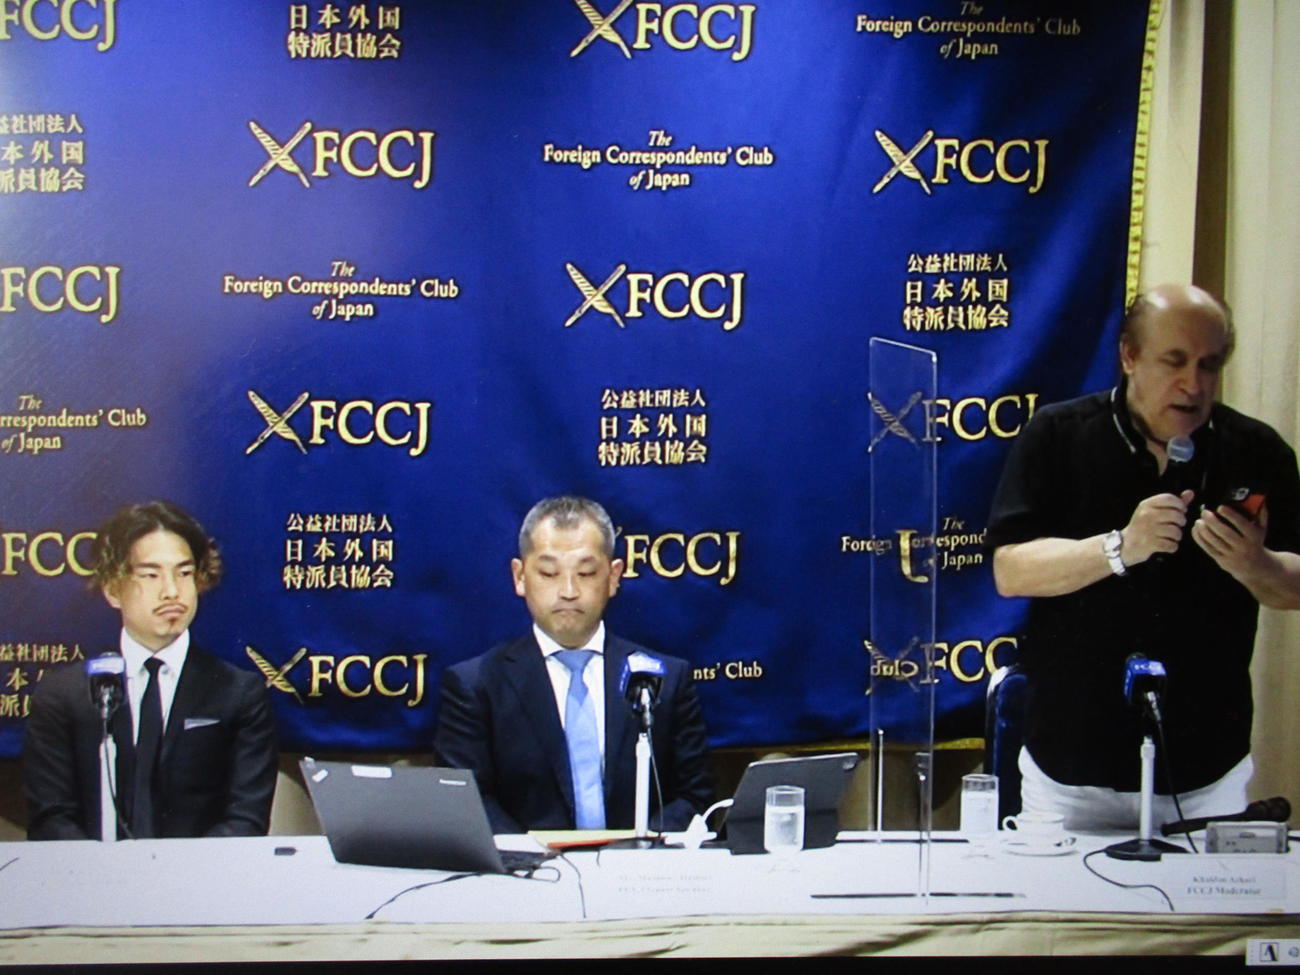 日本外国特派員協会に招かれた井岡一翔（左）と代理人の服部真尚弁護士（中央）